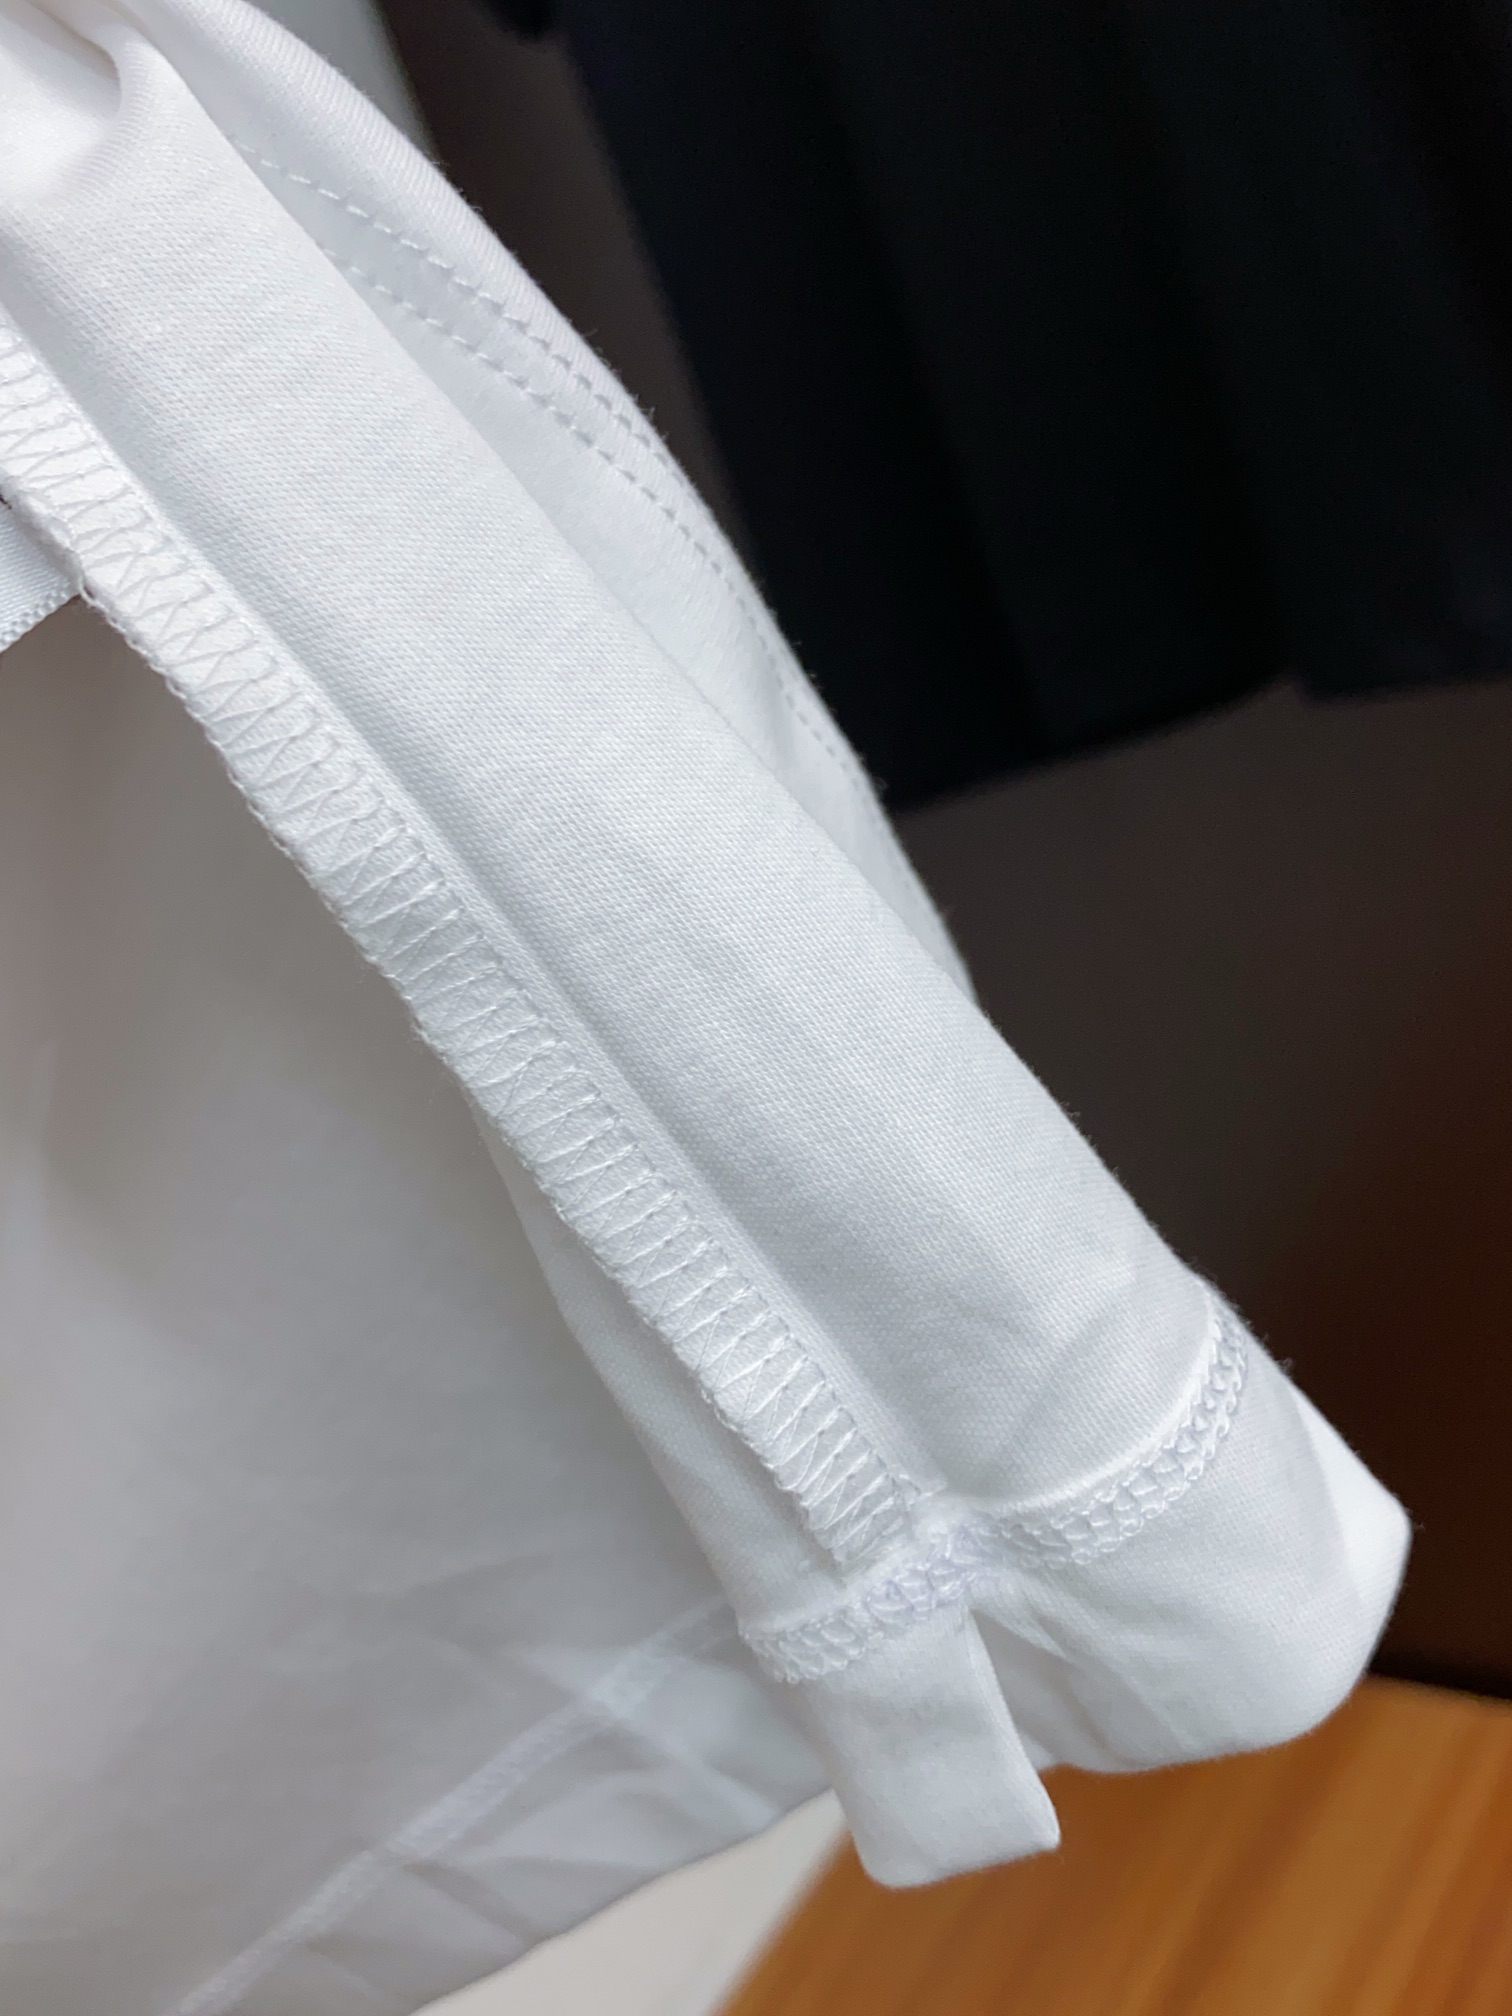 fendi ワイシャツスーパーコピー トップス 綿100% プリント 短袖 ゆったり シンプル 柔らかい メンズ ホワイト_6